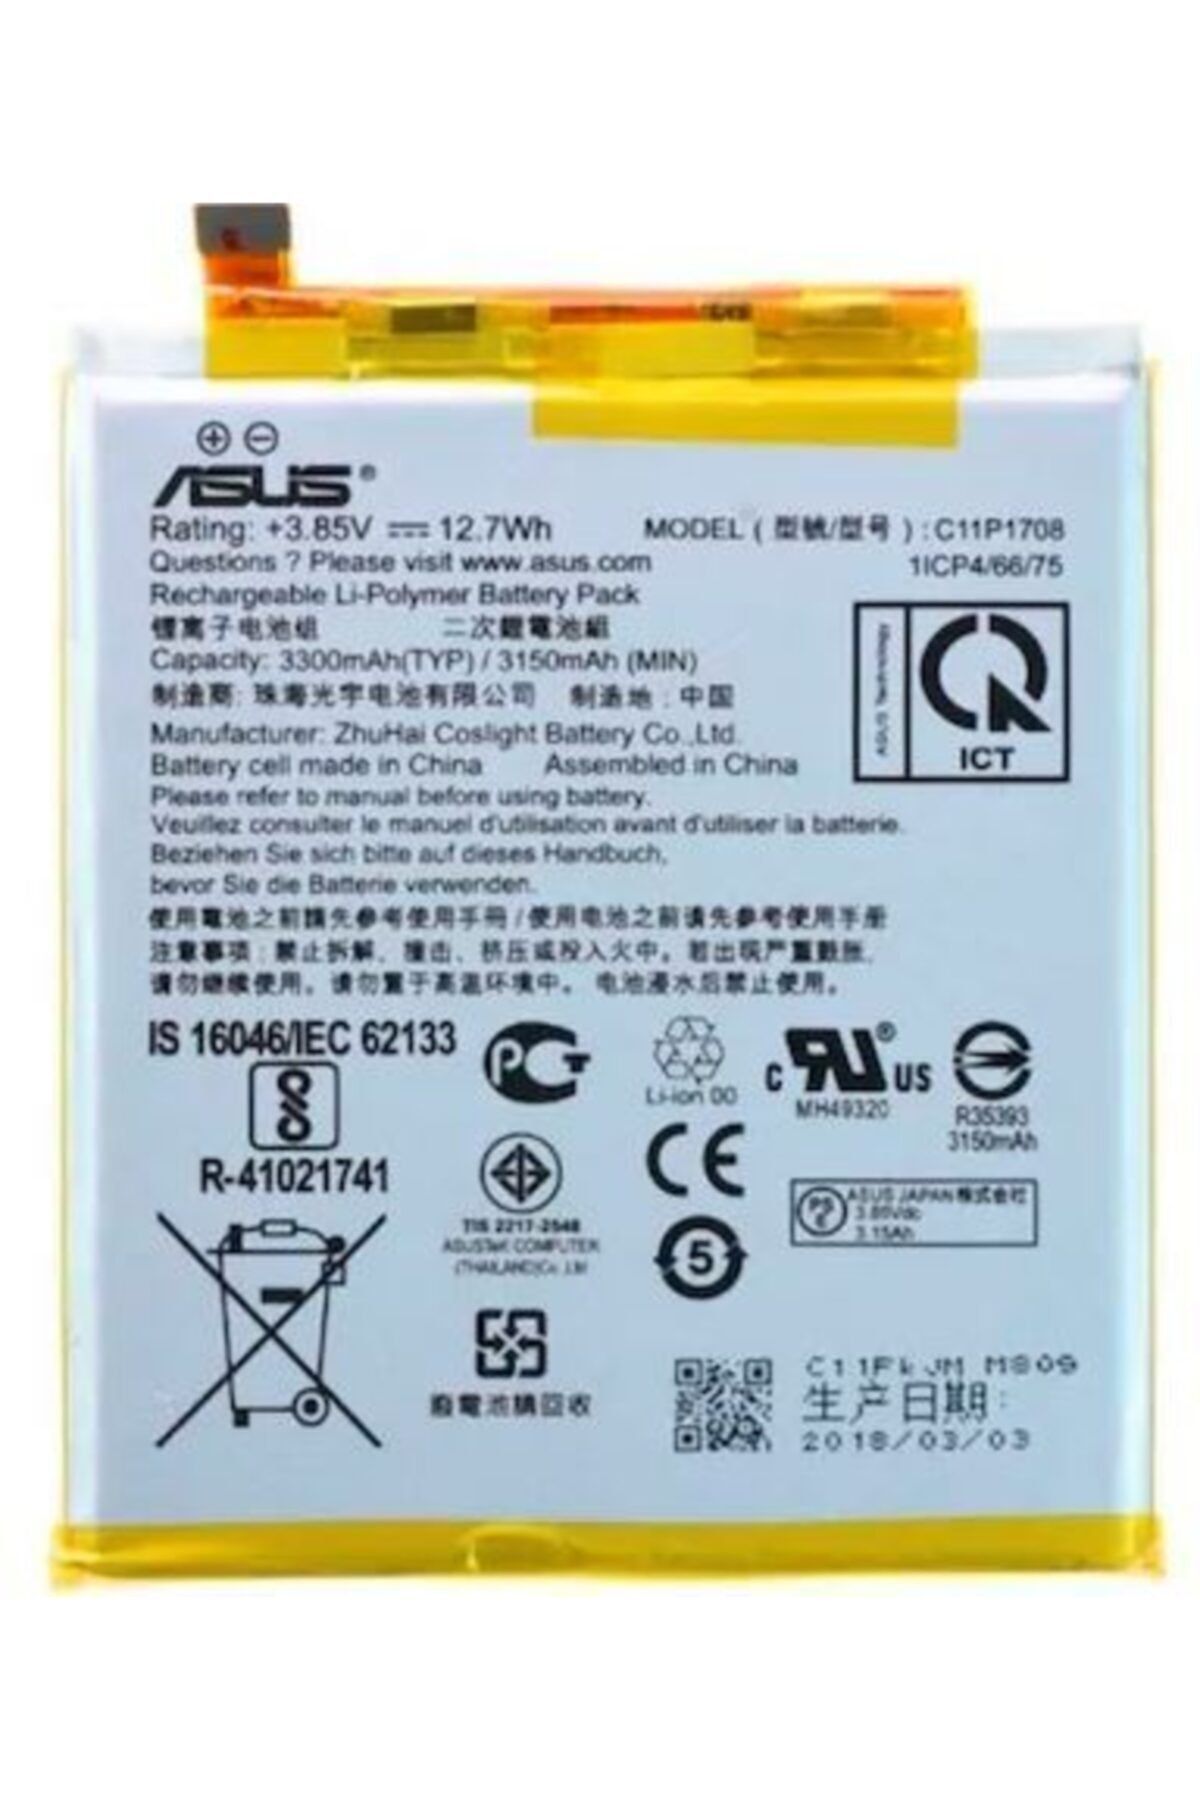 instatech Asus Zenfone 5 2018/ 5z (c11p1708) Ze620kl Batarya Pil